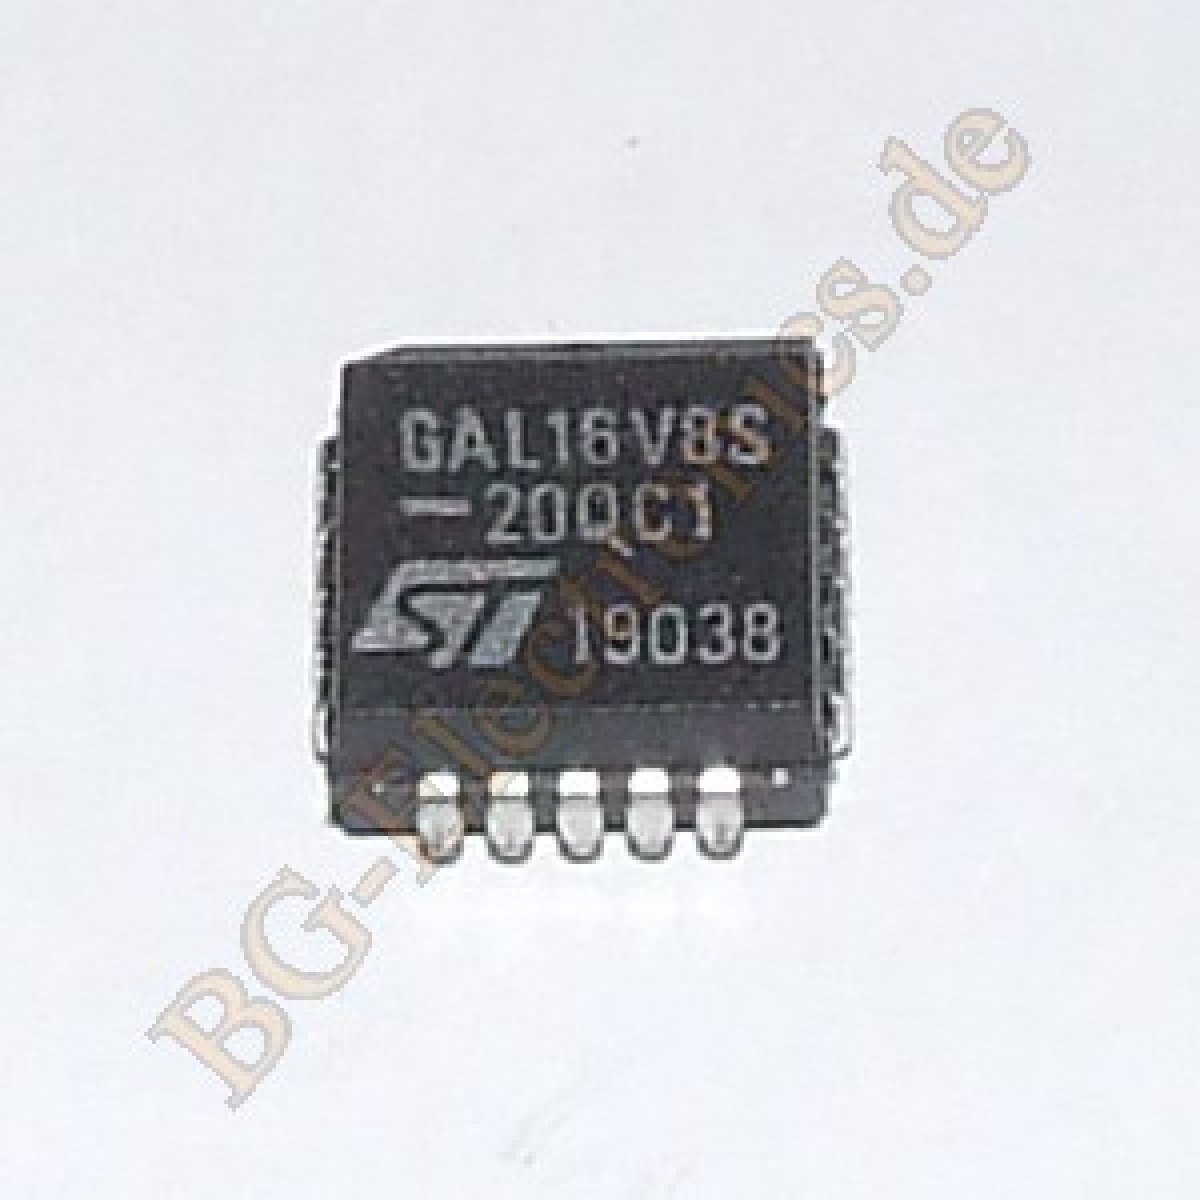 GAL16V8S-20QC1